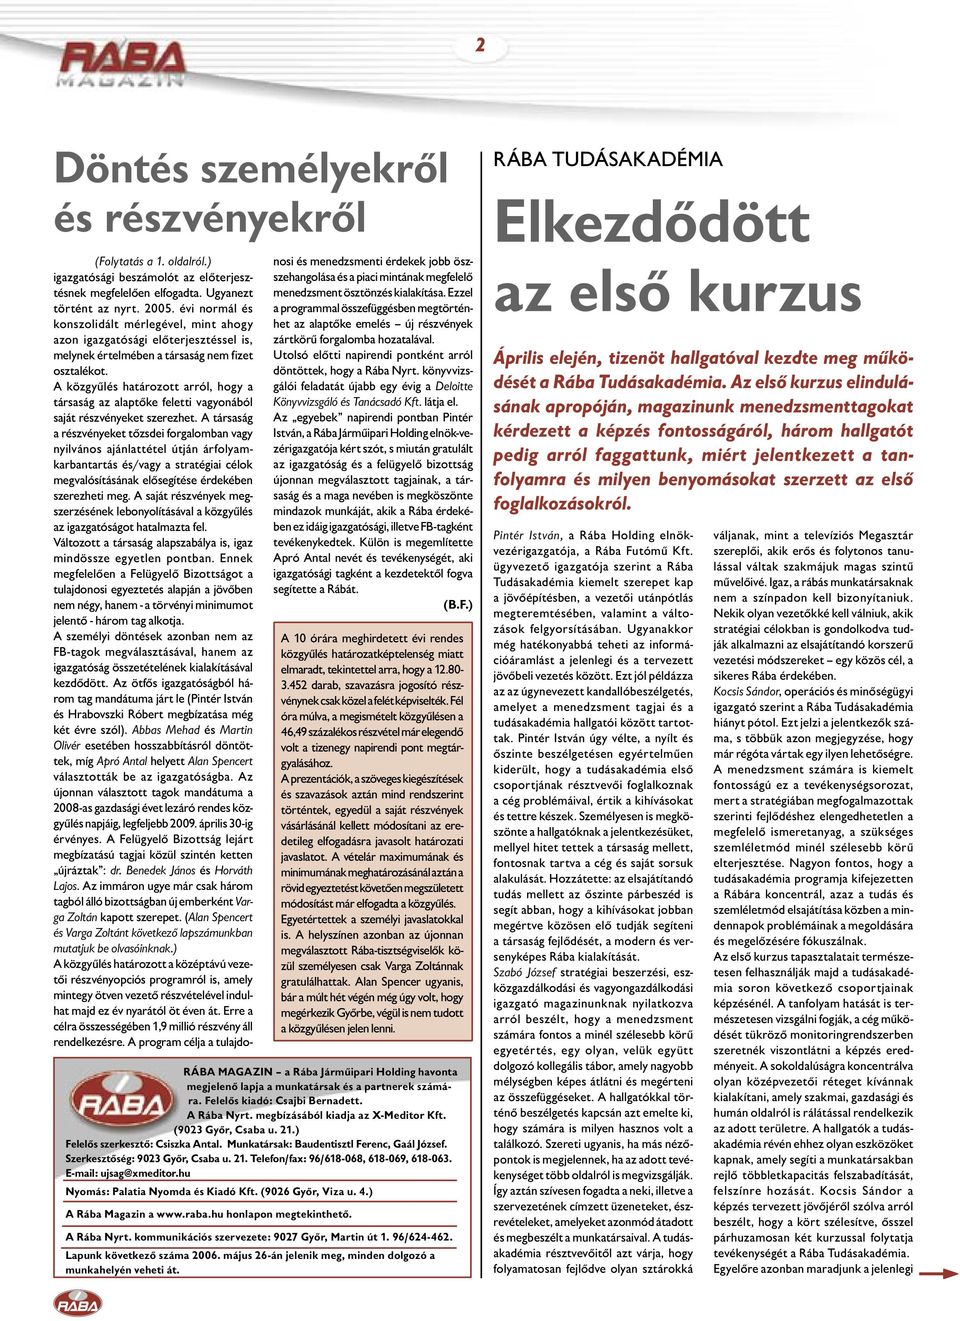 E-mail: ujsag@xmeditor.hu Nyomás: Palatia Nyomda és Kiadó Kft. (9026 Győr, Viza u. 4.) A Rába Magazin a www.raba.hu honlapon megtekinthető. (Folytatás a 1. oldalról.